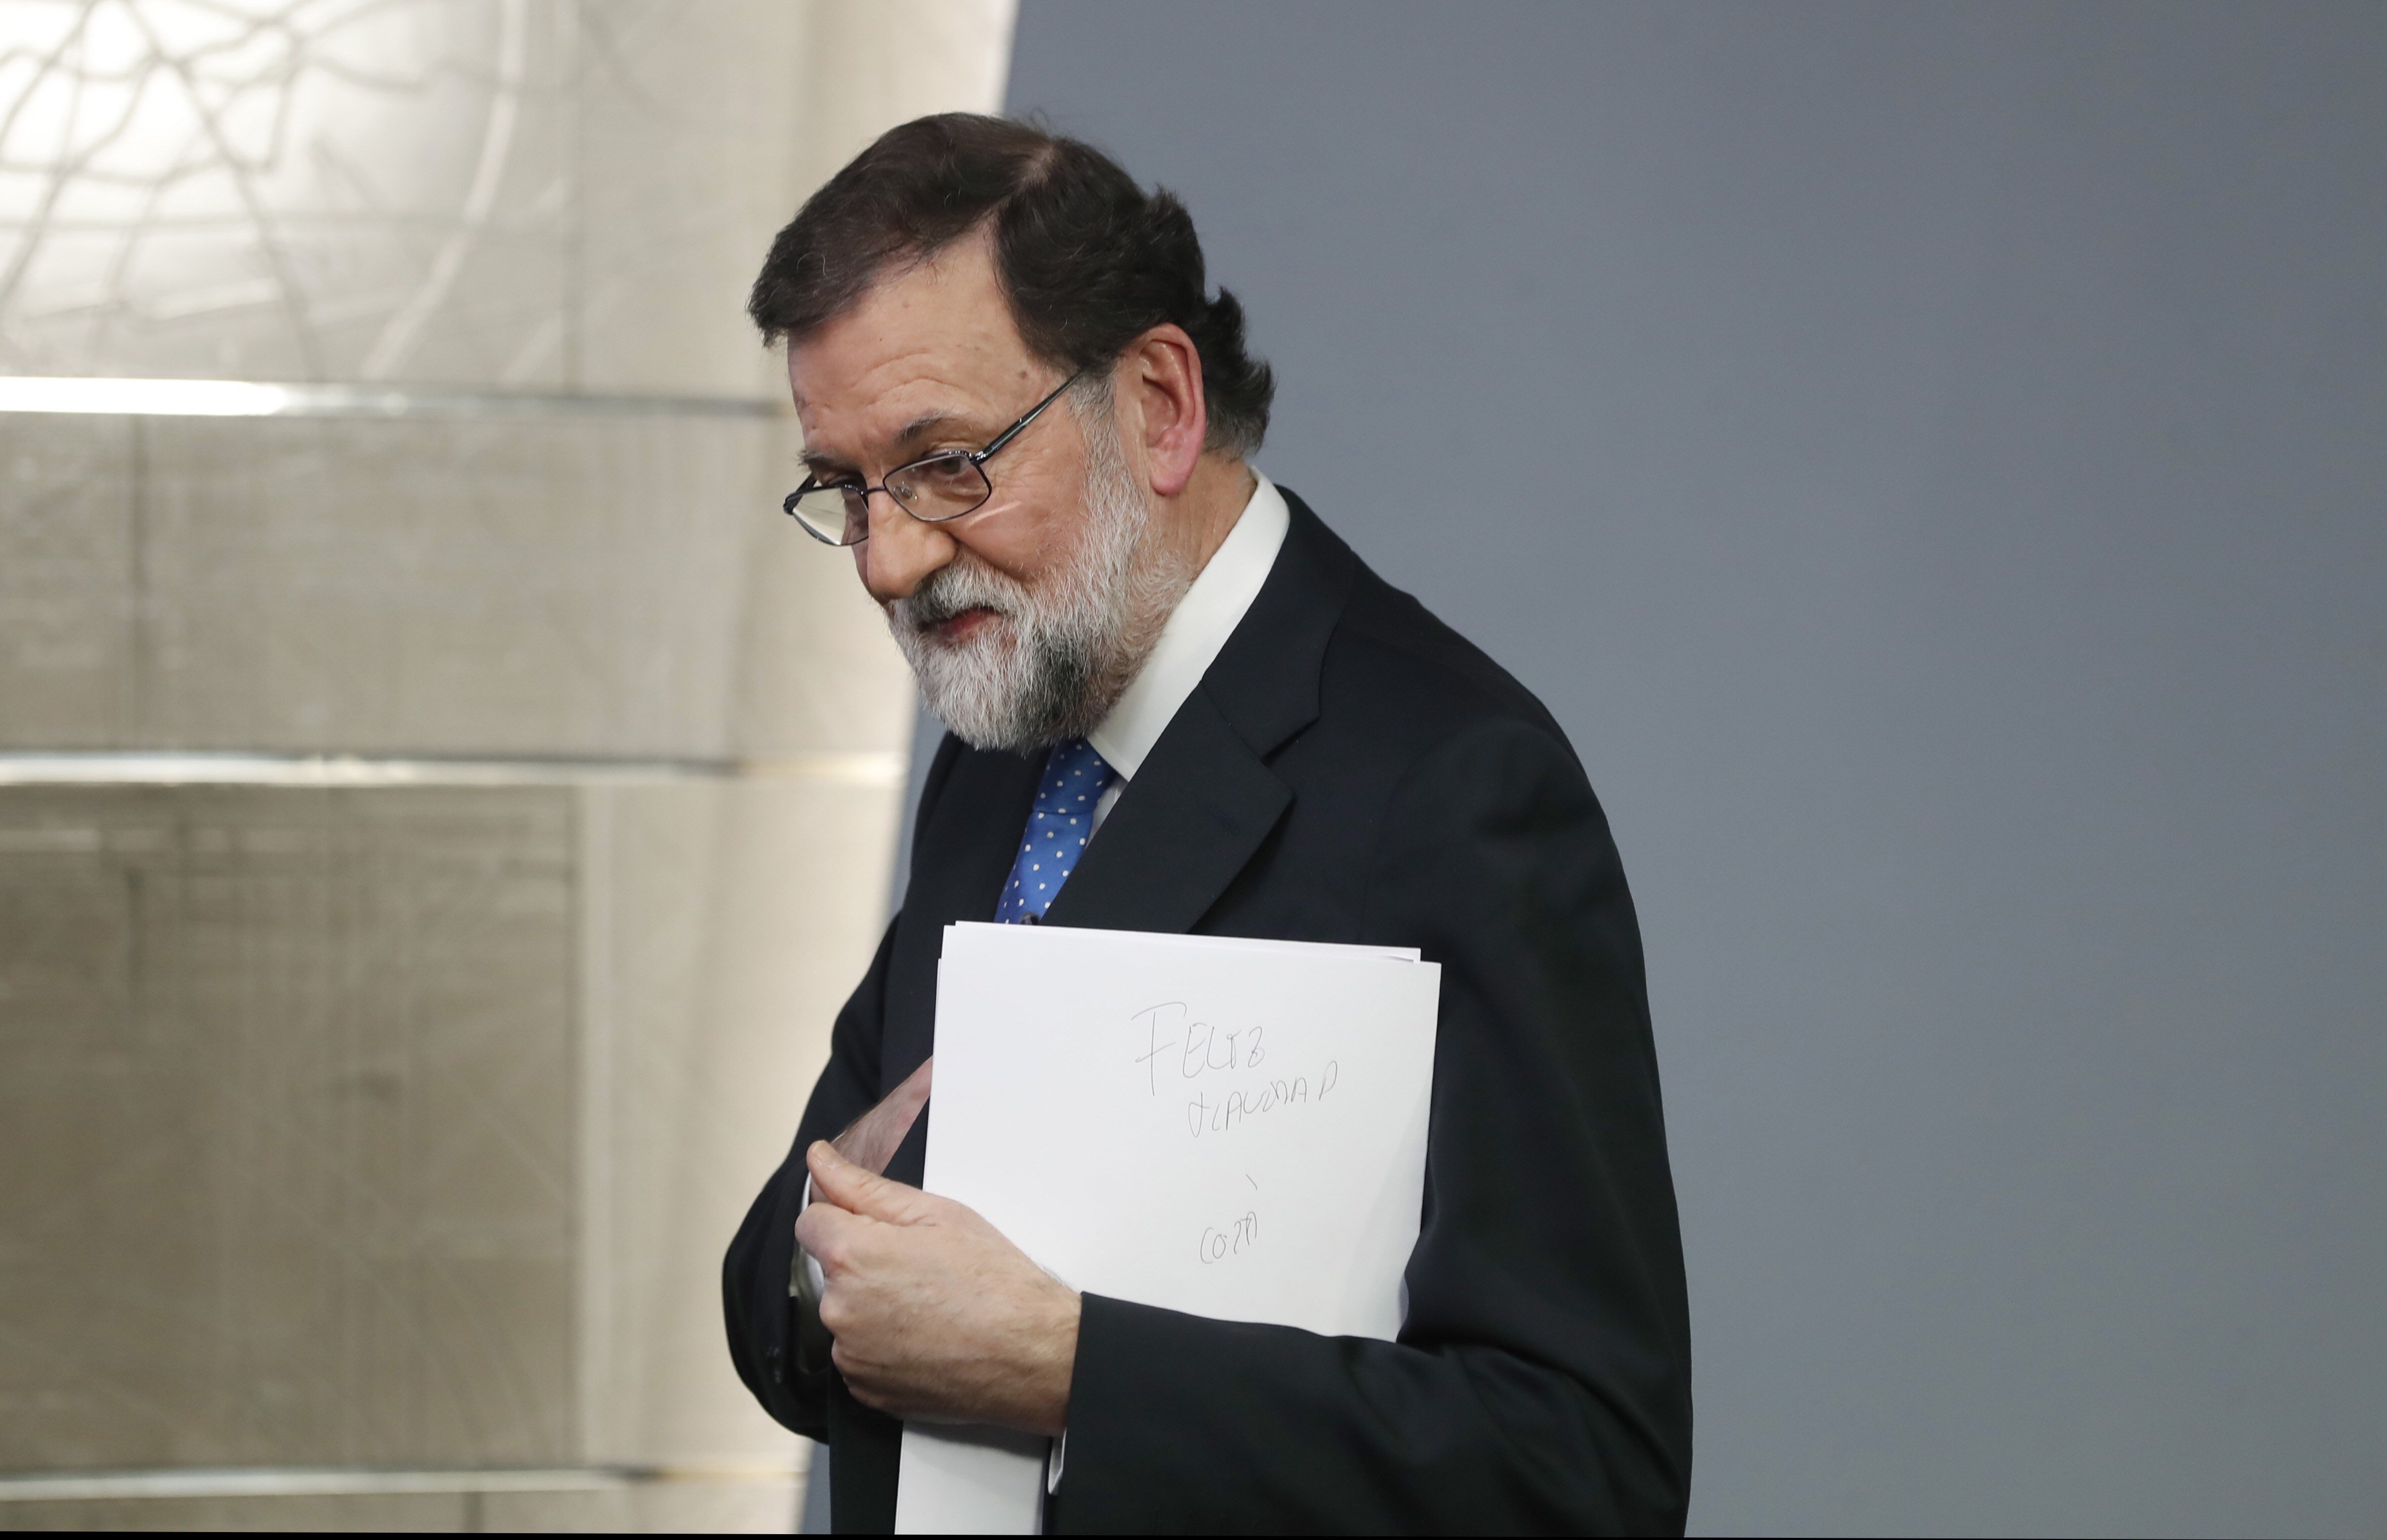 El porrazo en Catalunya enturbia la legislatura a Rajoy